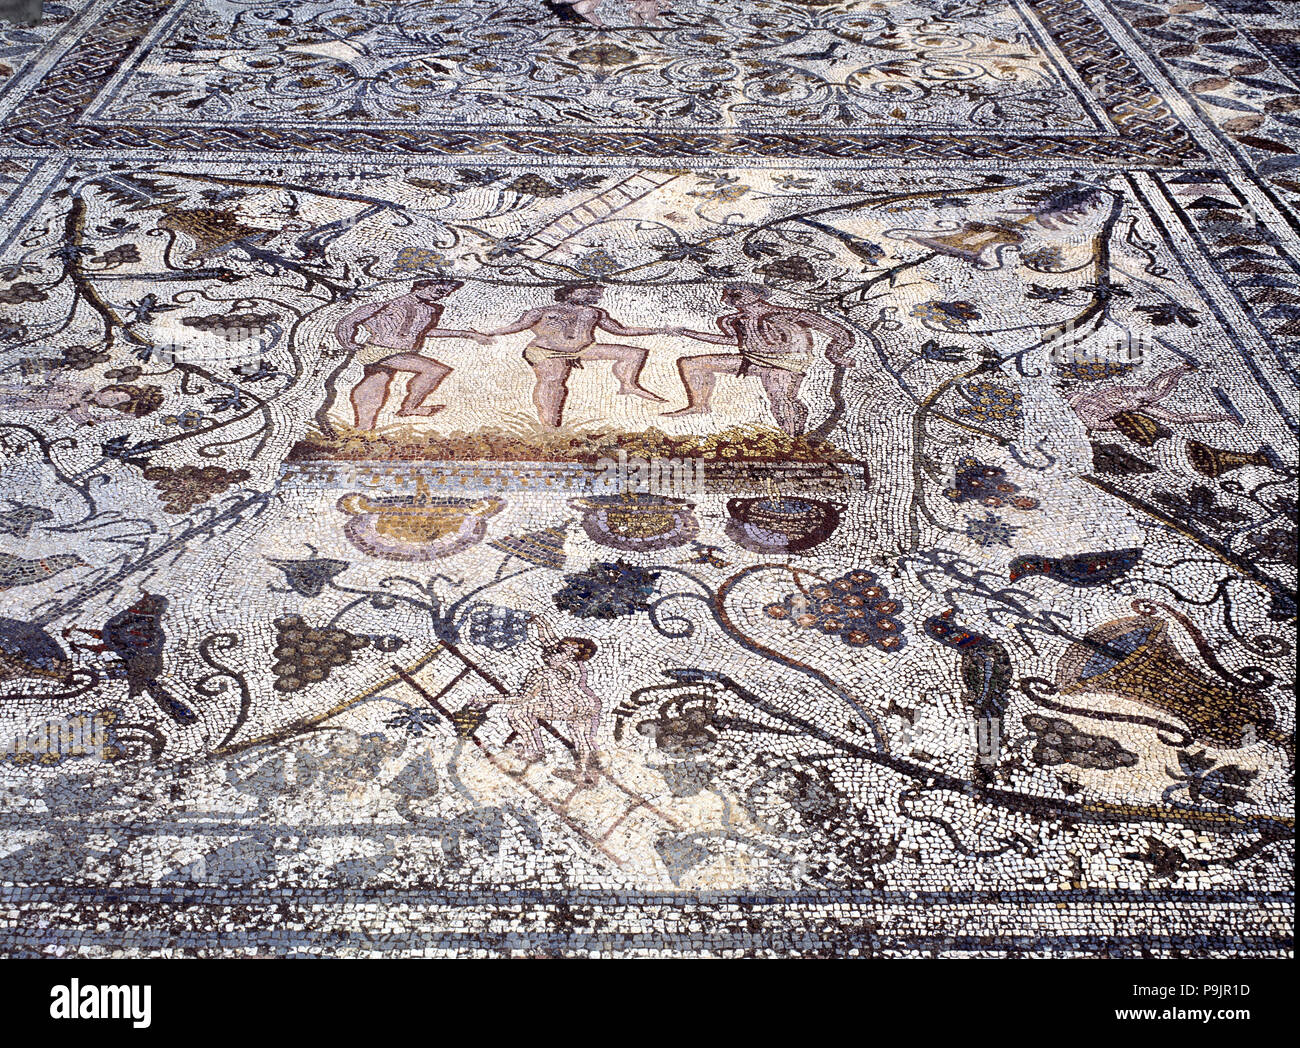 Rovine di Mérida, casa romana dell'Anfiteatro, dettaglio del mosaico con scene di calpestio di… Foto Stock